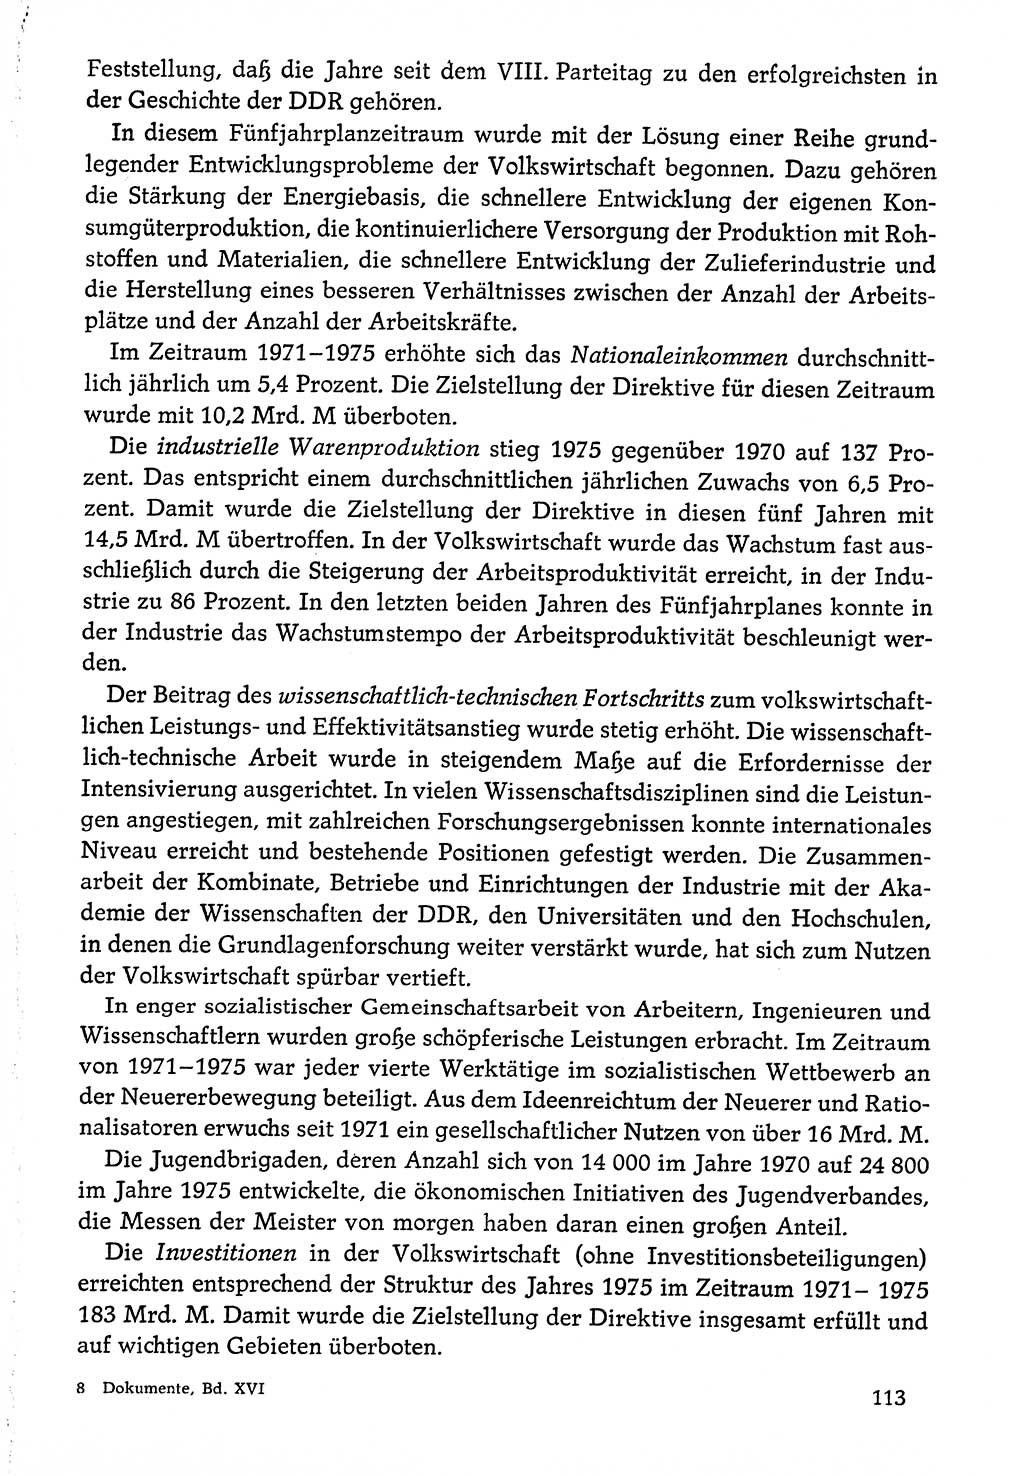 Dokumente der Sozialistischen Einheitspartei Deutschlands (SED) [Deutsche Demokratische Republik (DDR)] 1976-1977, Seite 113 (Dok. SED DDR 1976-1977, S. 113)